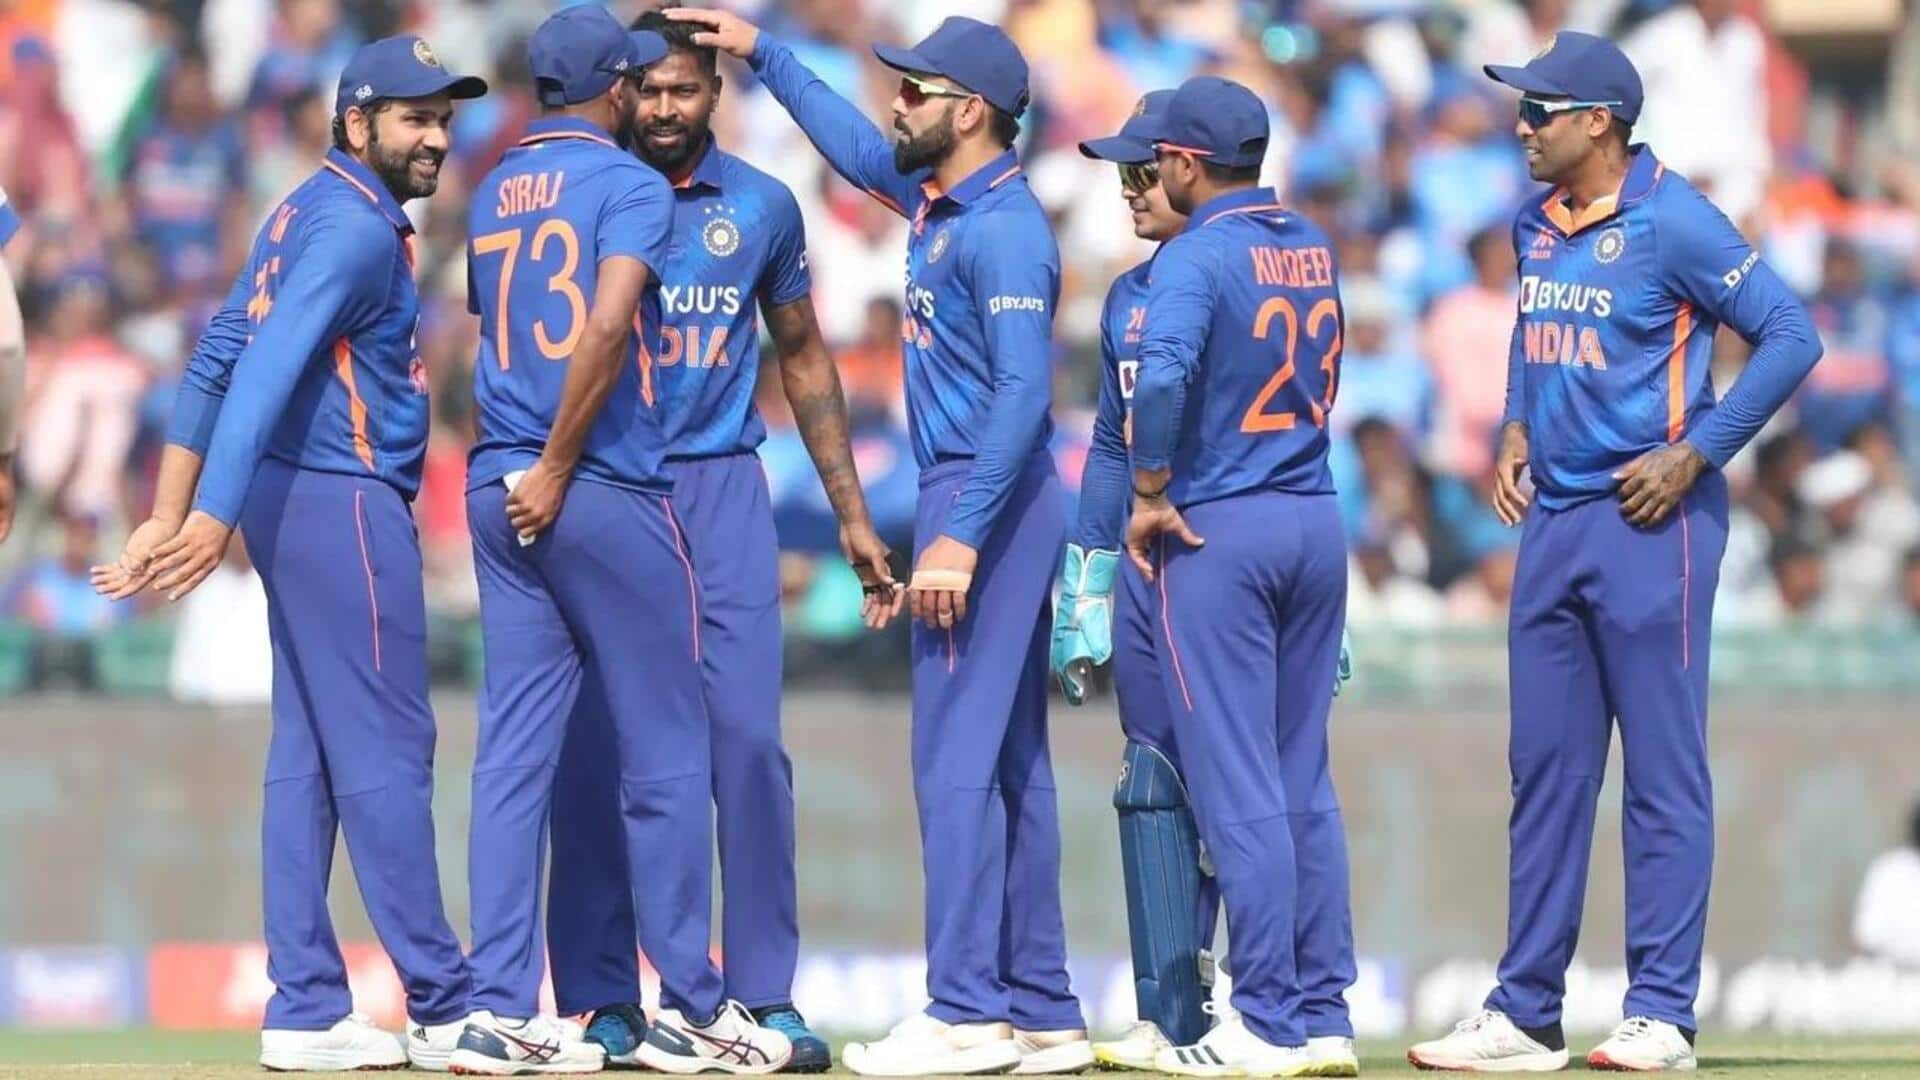 #NewsBytesExplainer: सबसे आखिर में टी-20 खेलने वाला भारत कैसे बना इस प्रारूप का बादशाह? जानिए सफरनामा